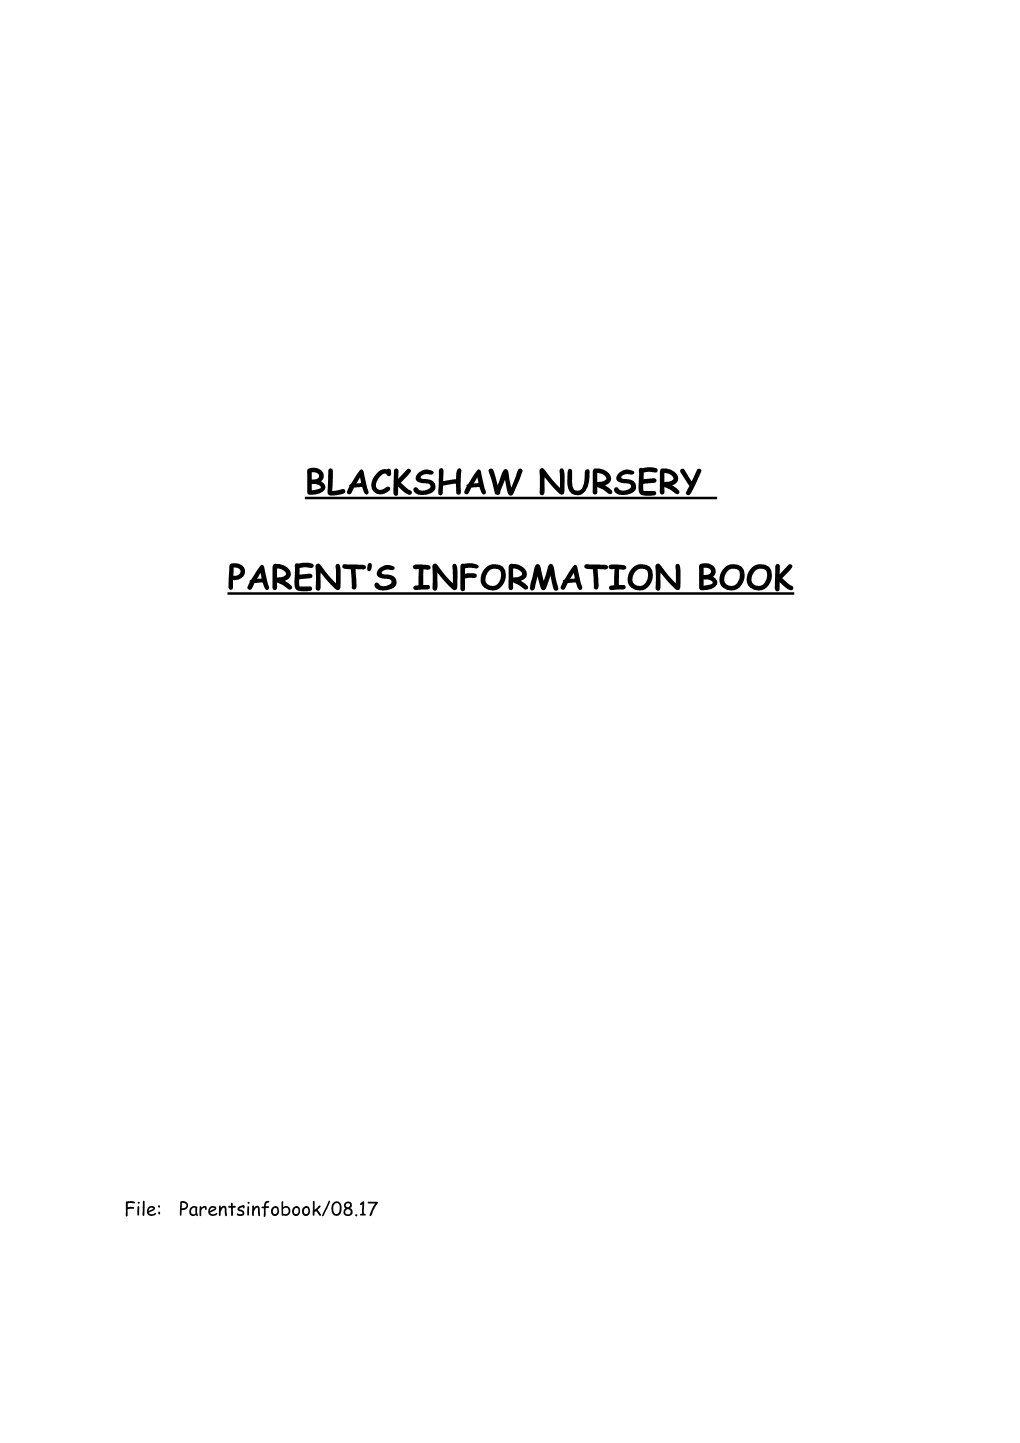 Blackshaw Nursery